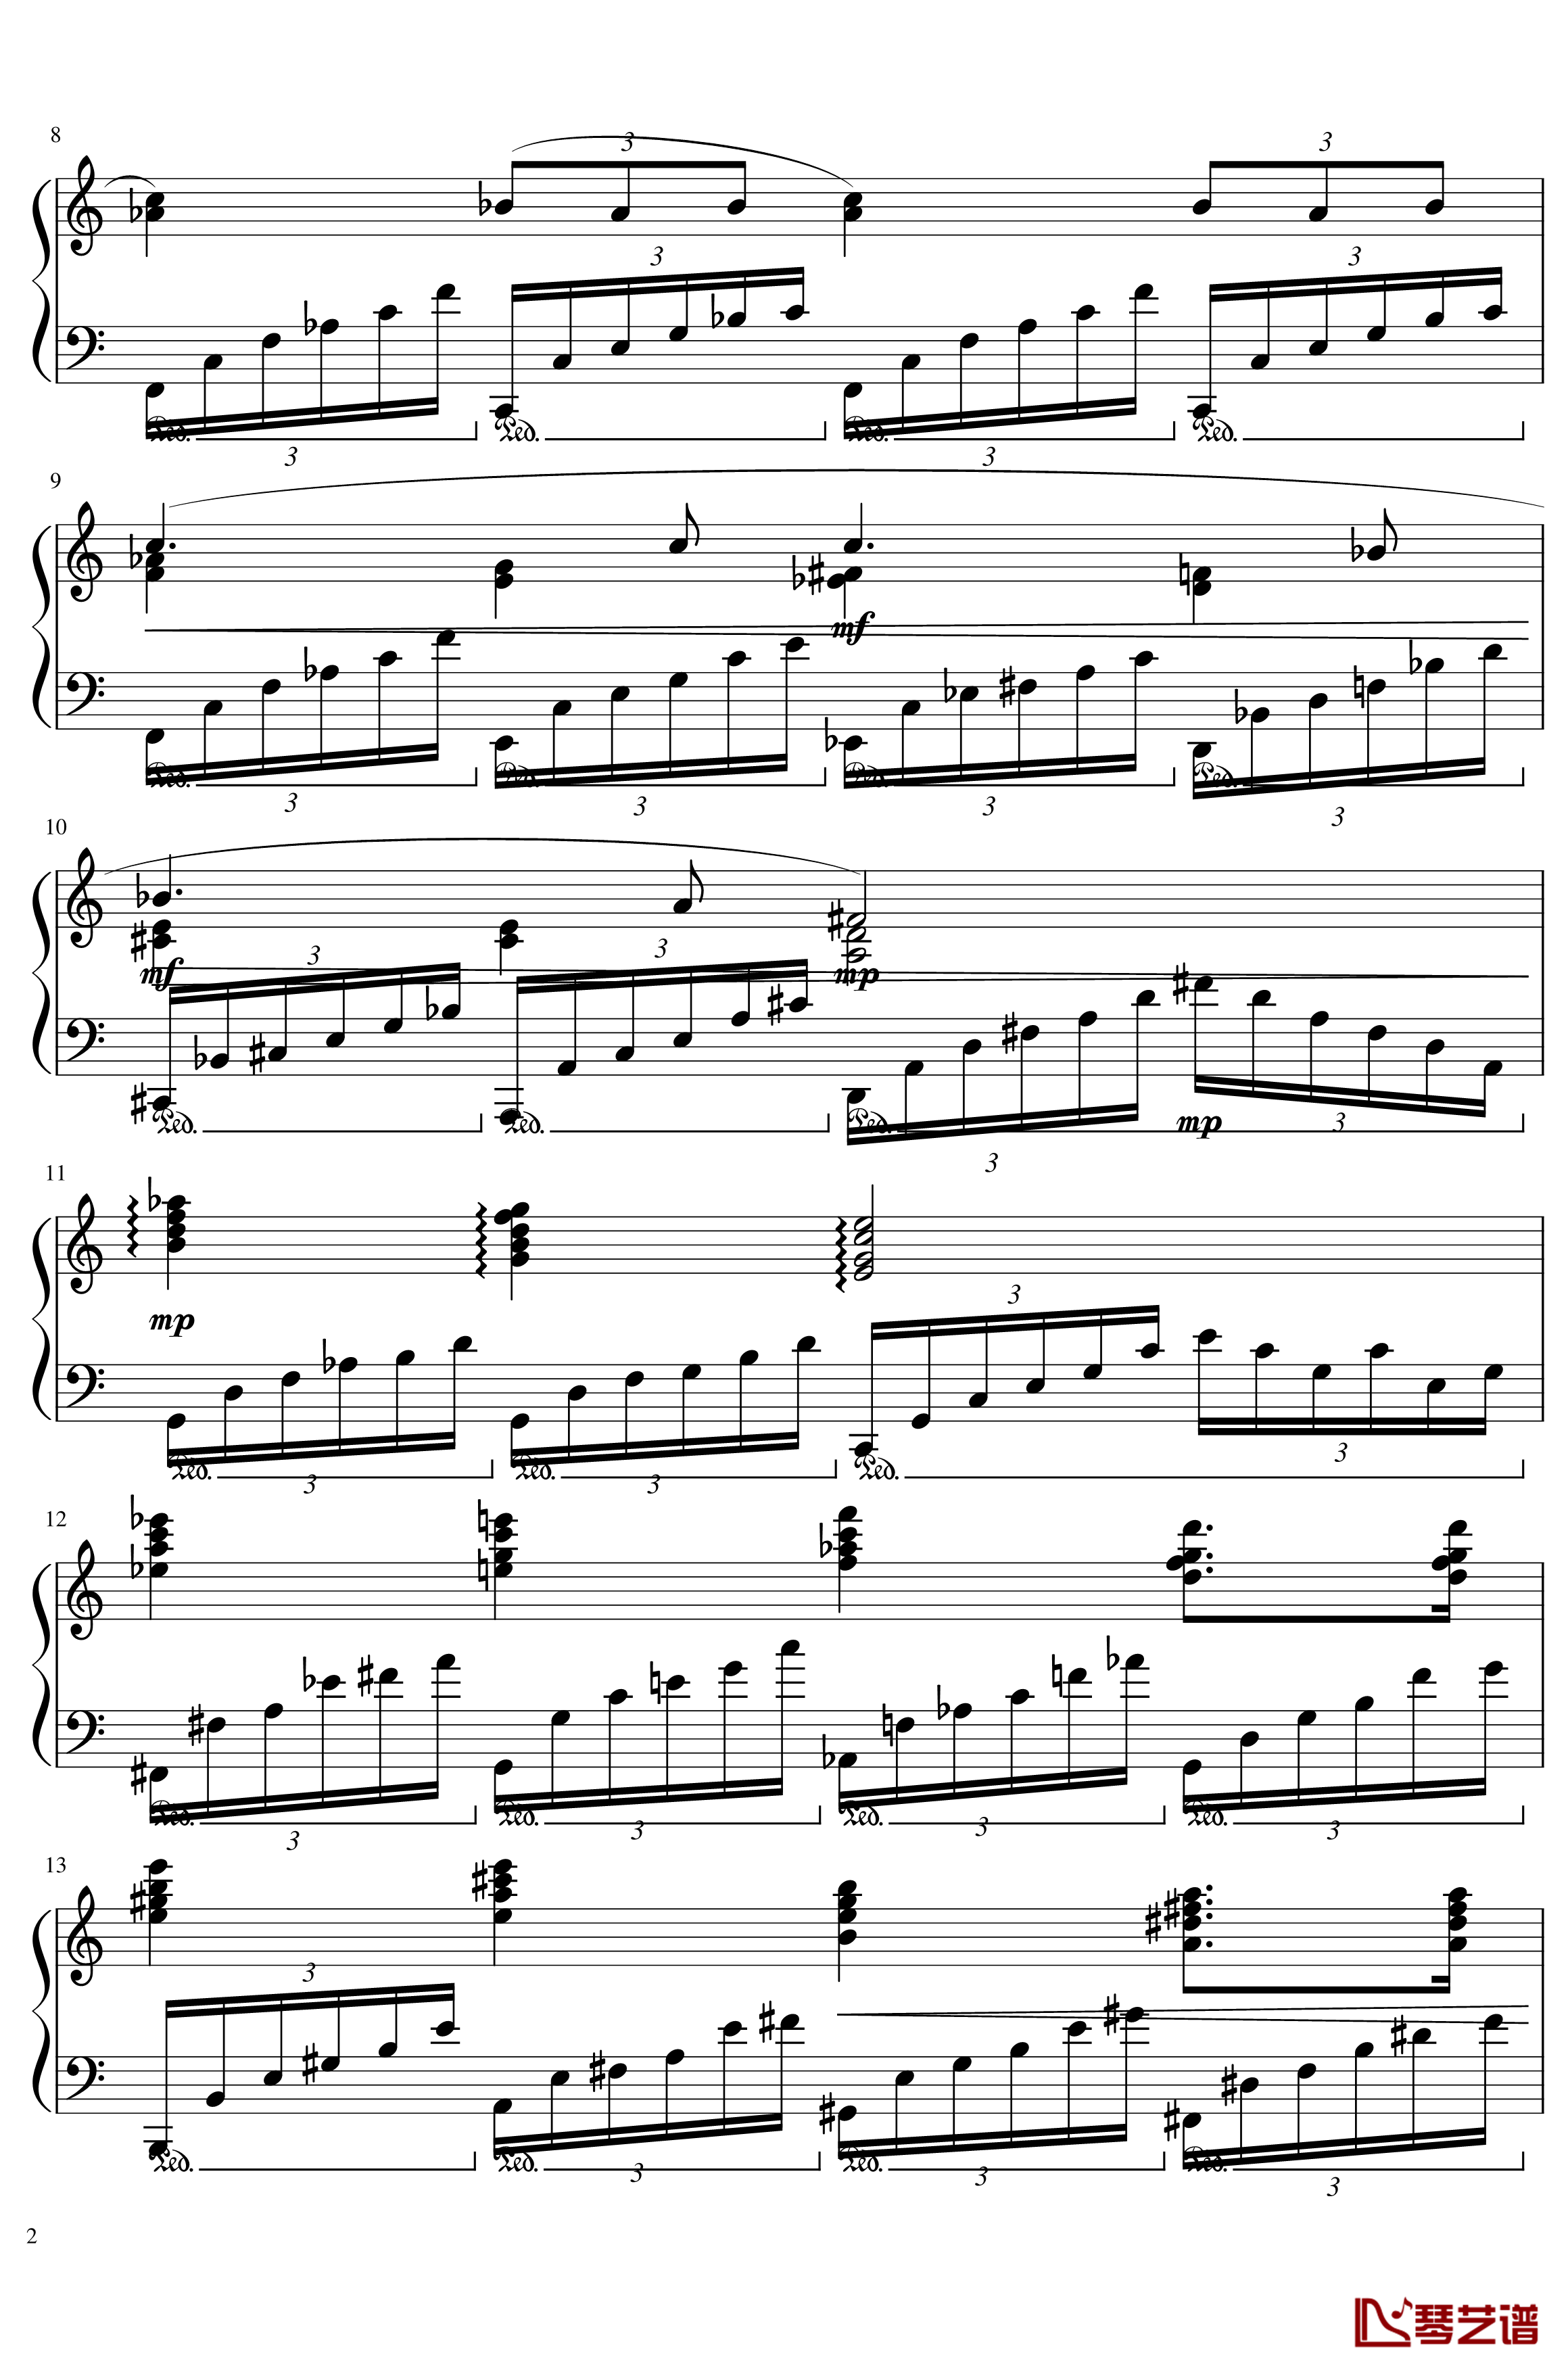 Ballade No.2, Op.93 谱子钢琴谱-一个球